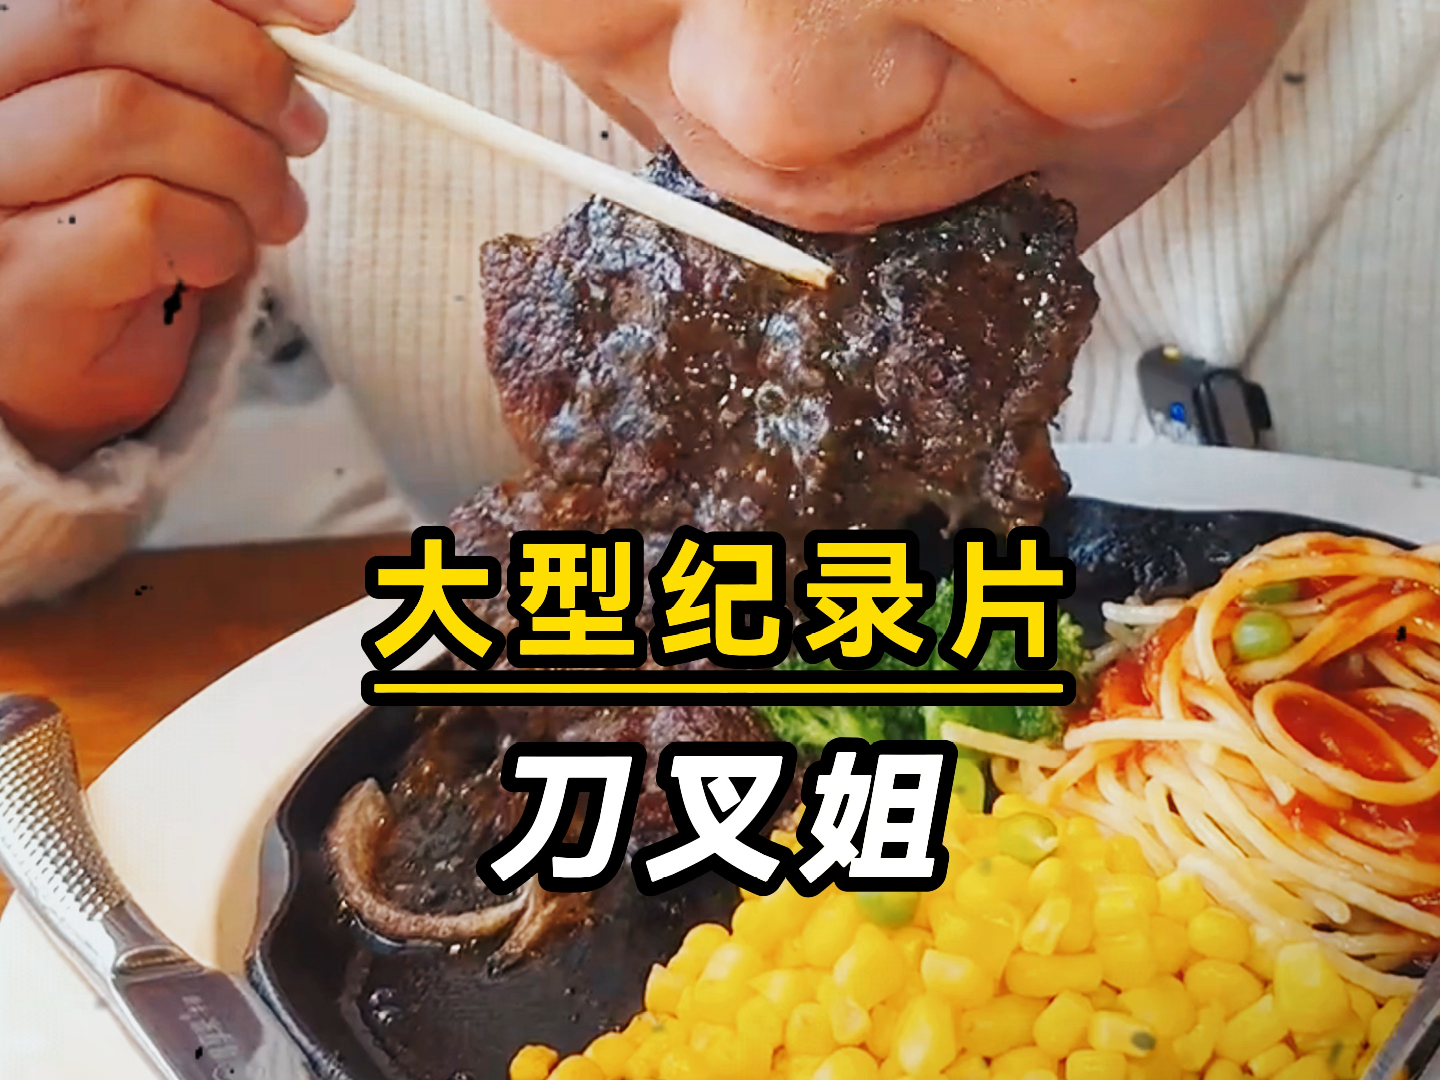 大型纪录片《刀叉姐》吃西餐就不能用筷子吗